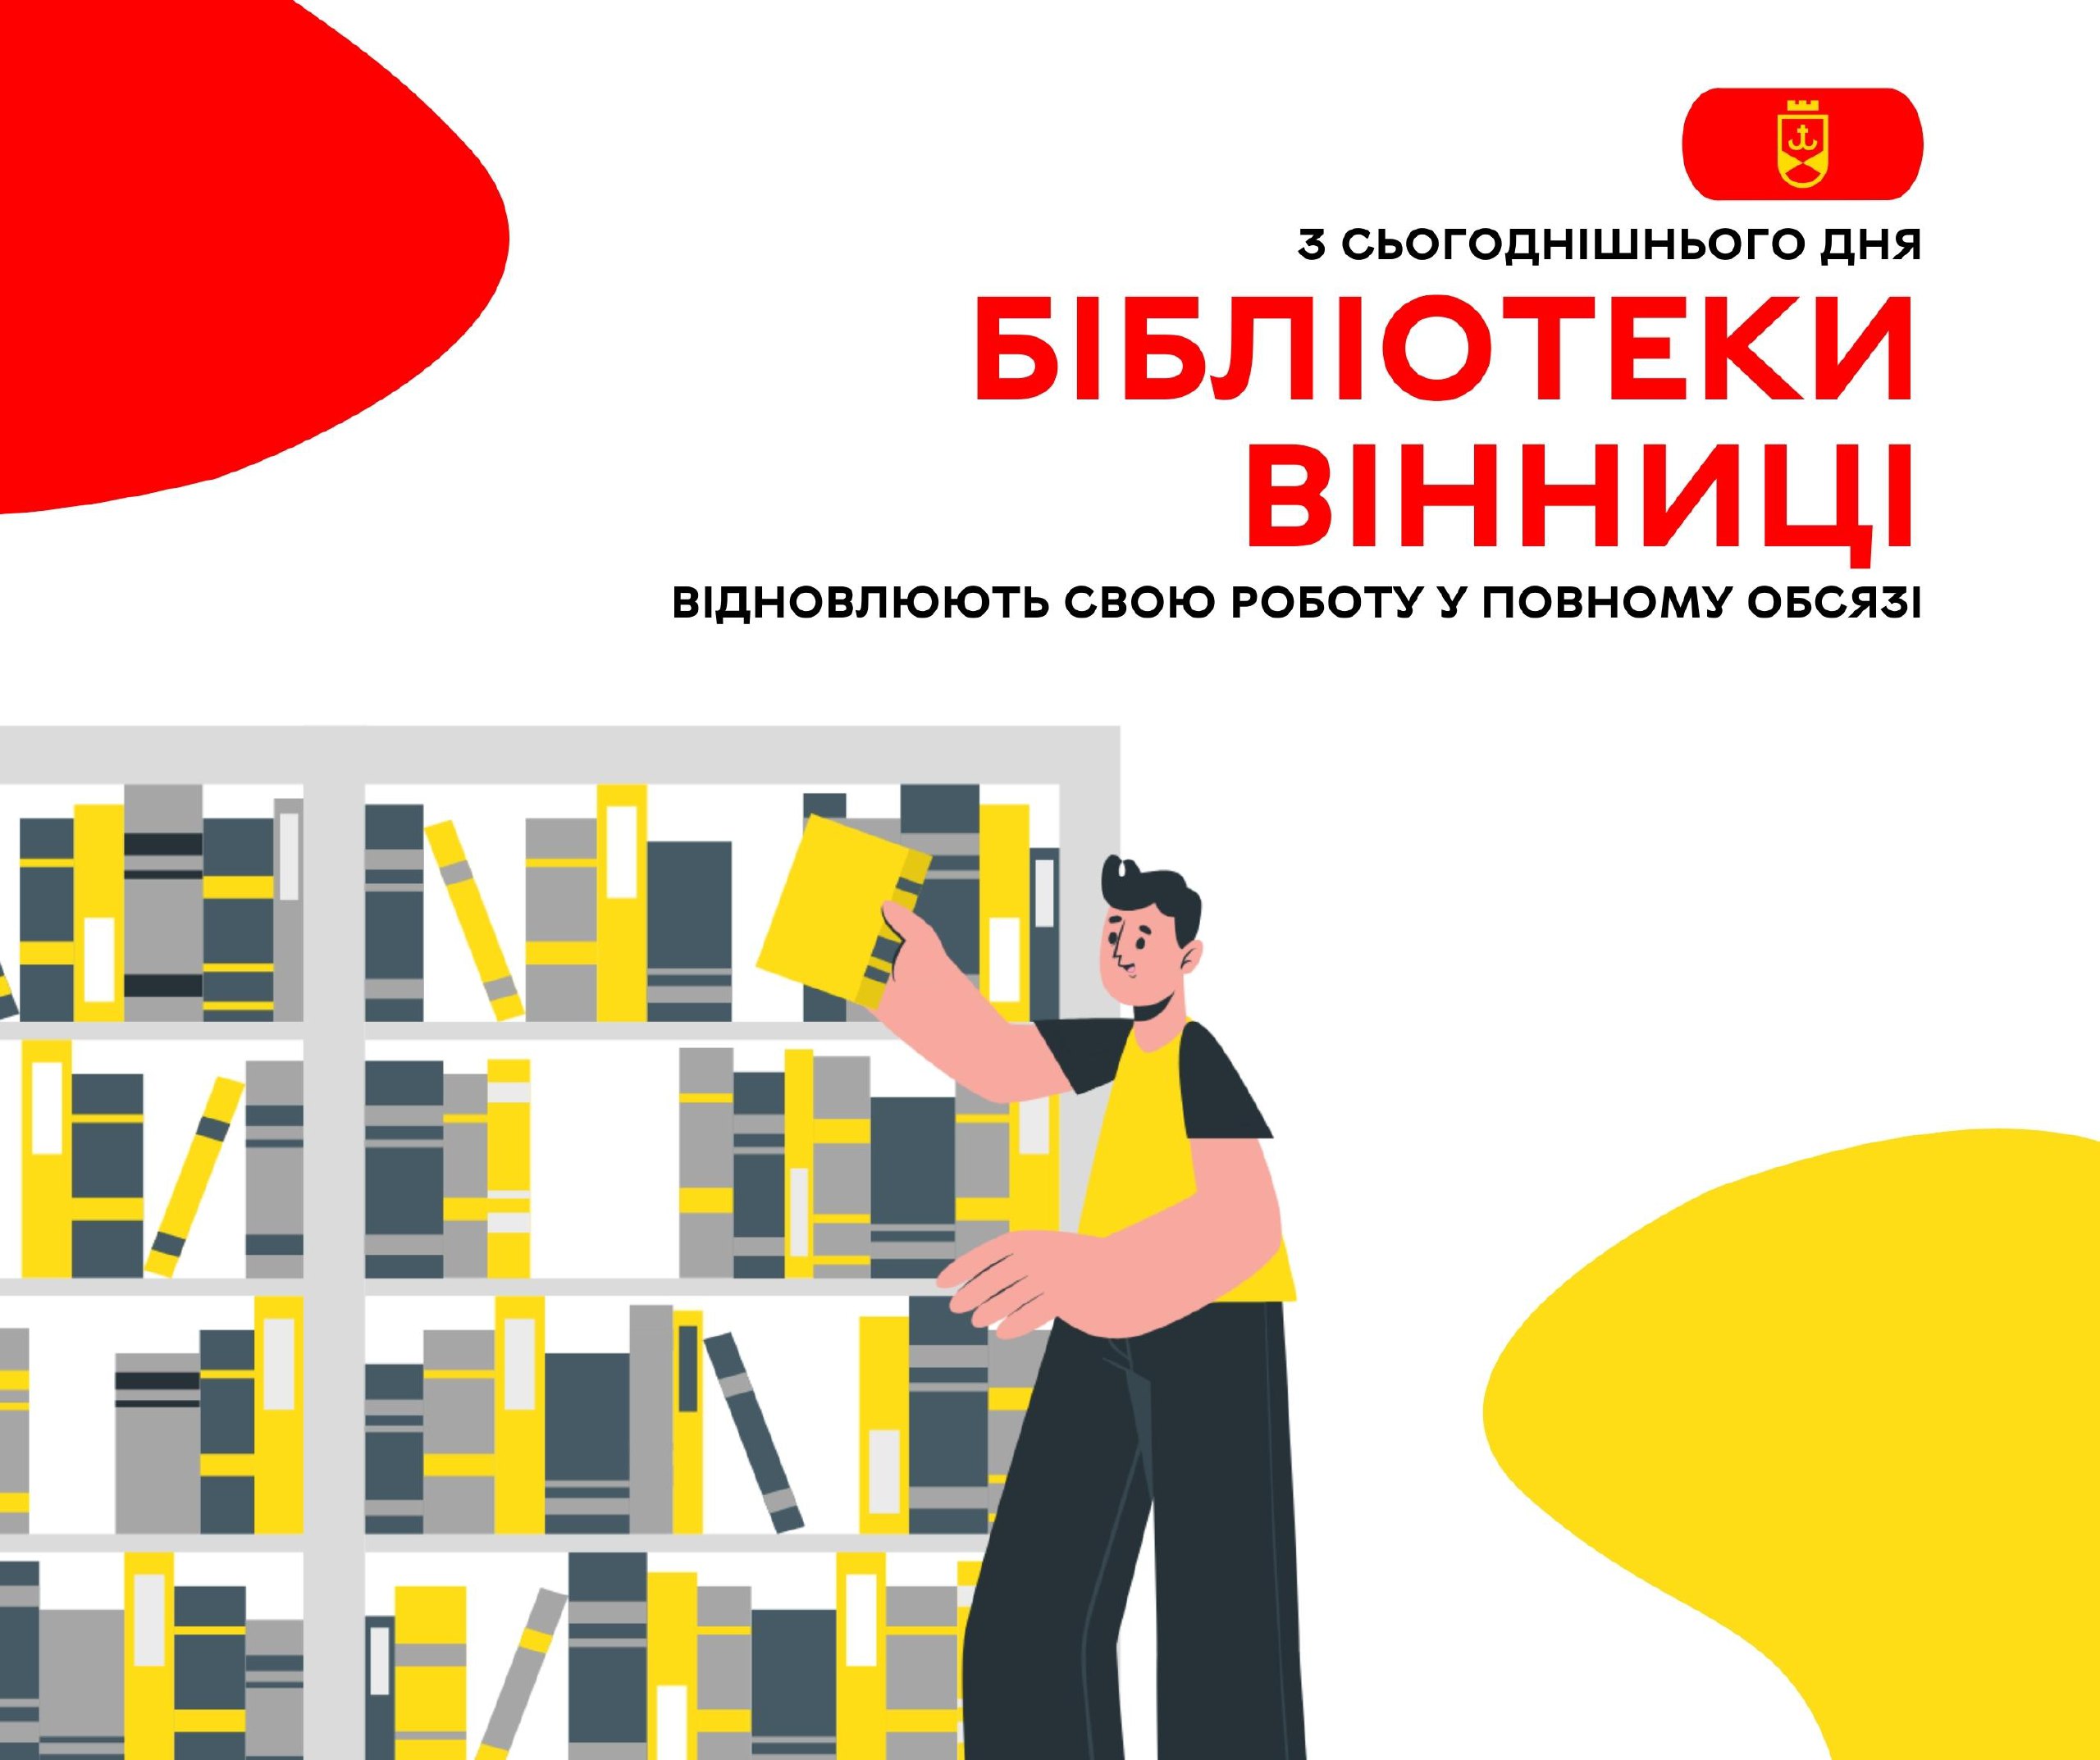 Вінницькі міські бібліотеки відновлюють повноцінну роботу За інформацією Вінницької міської ради